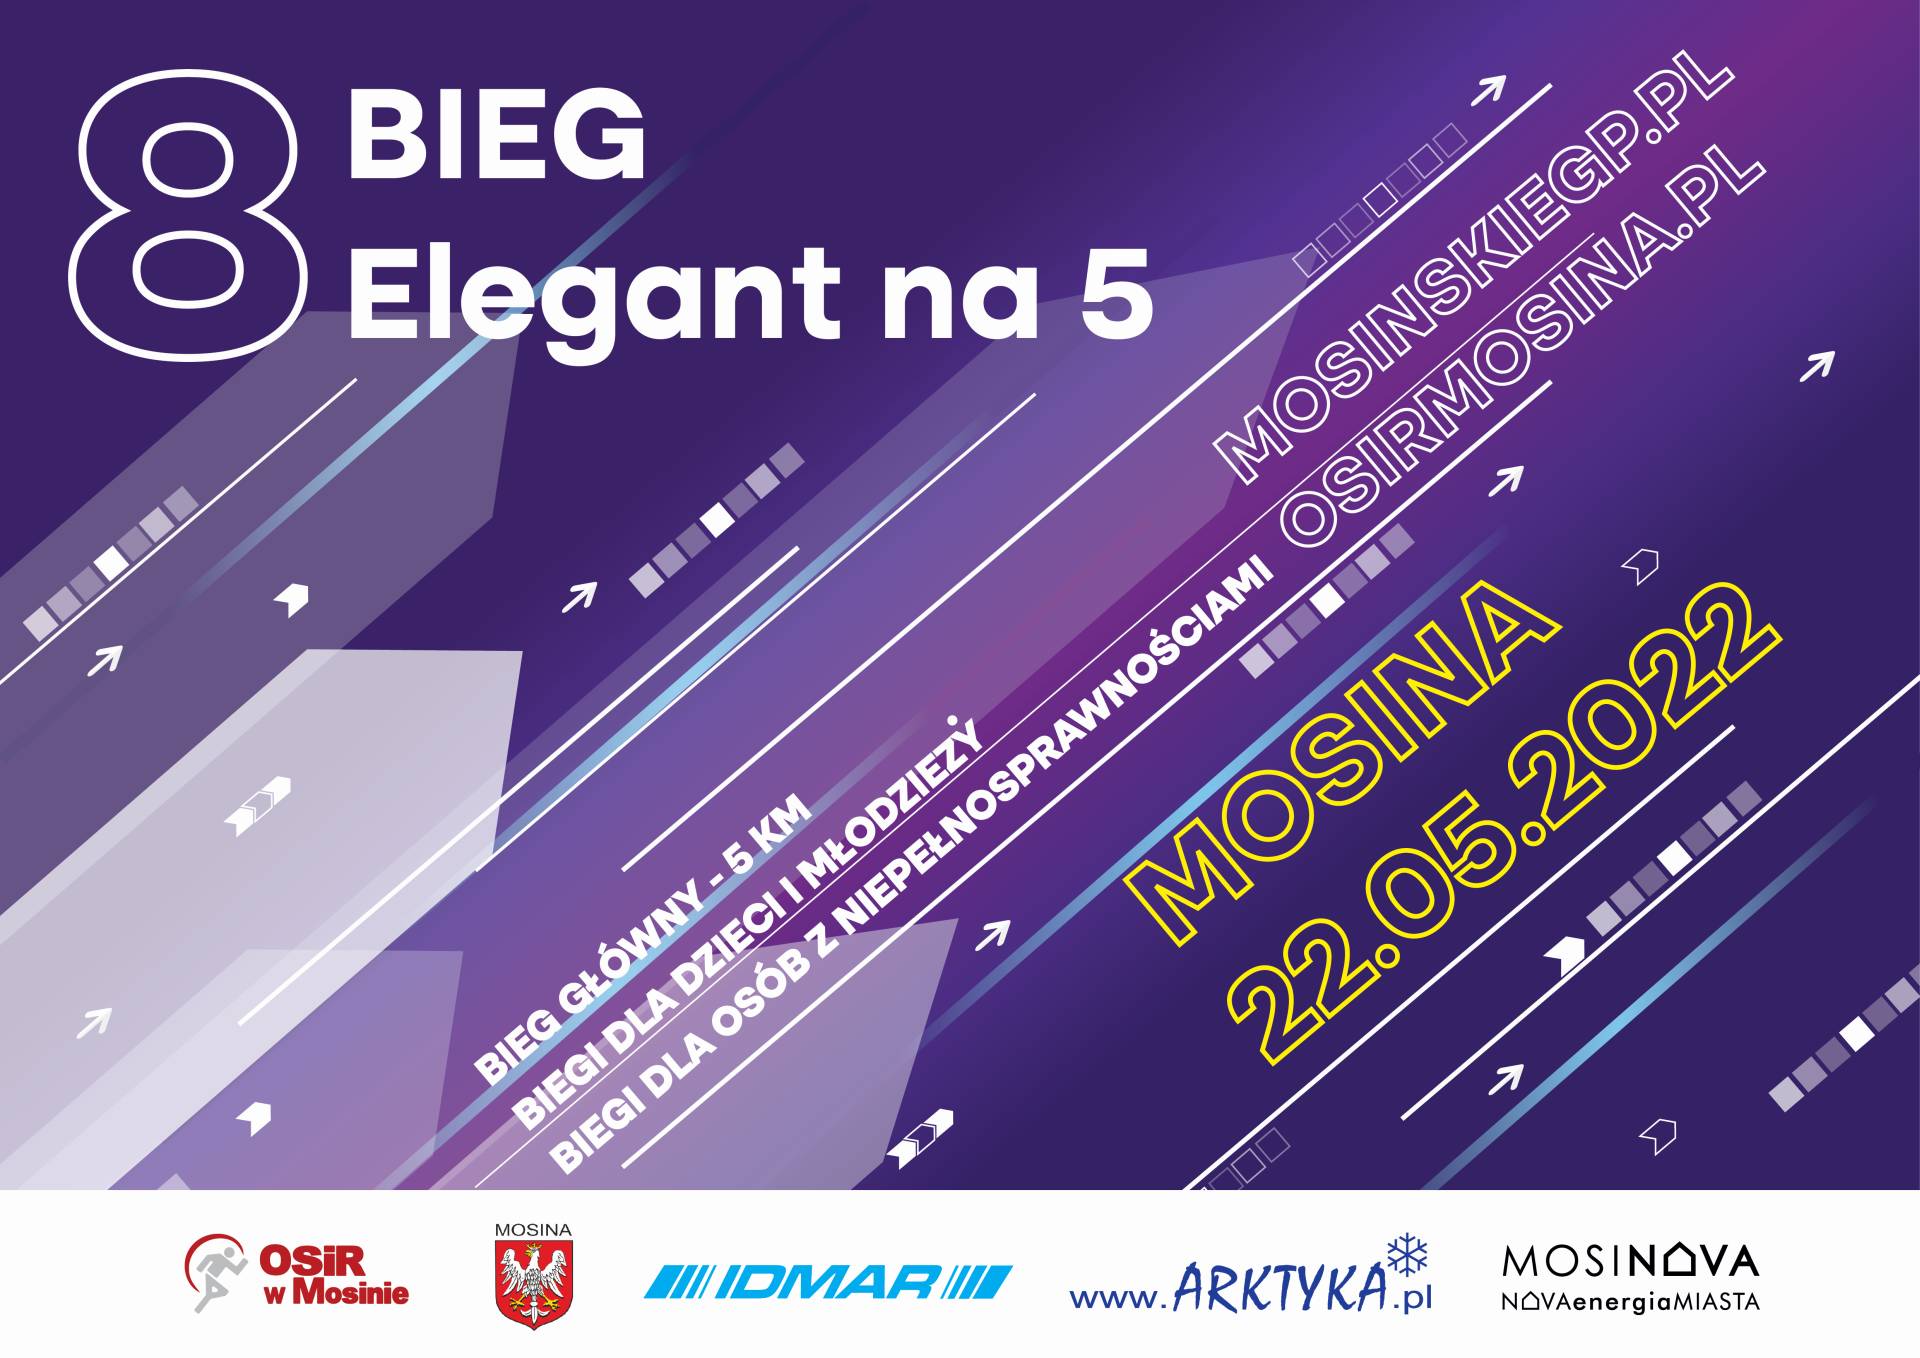 plakat informujący o 8 Biegu Elegant na 5 w dniu 22 maja 2022